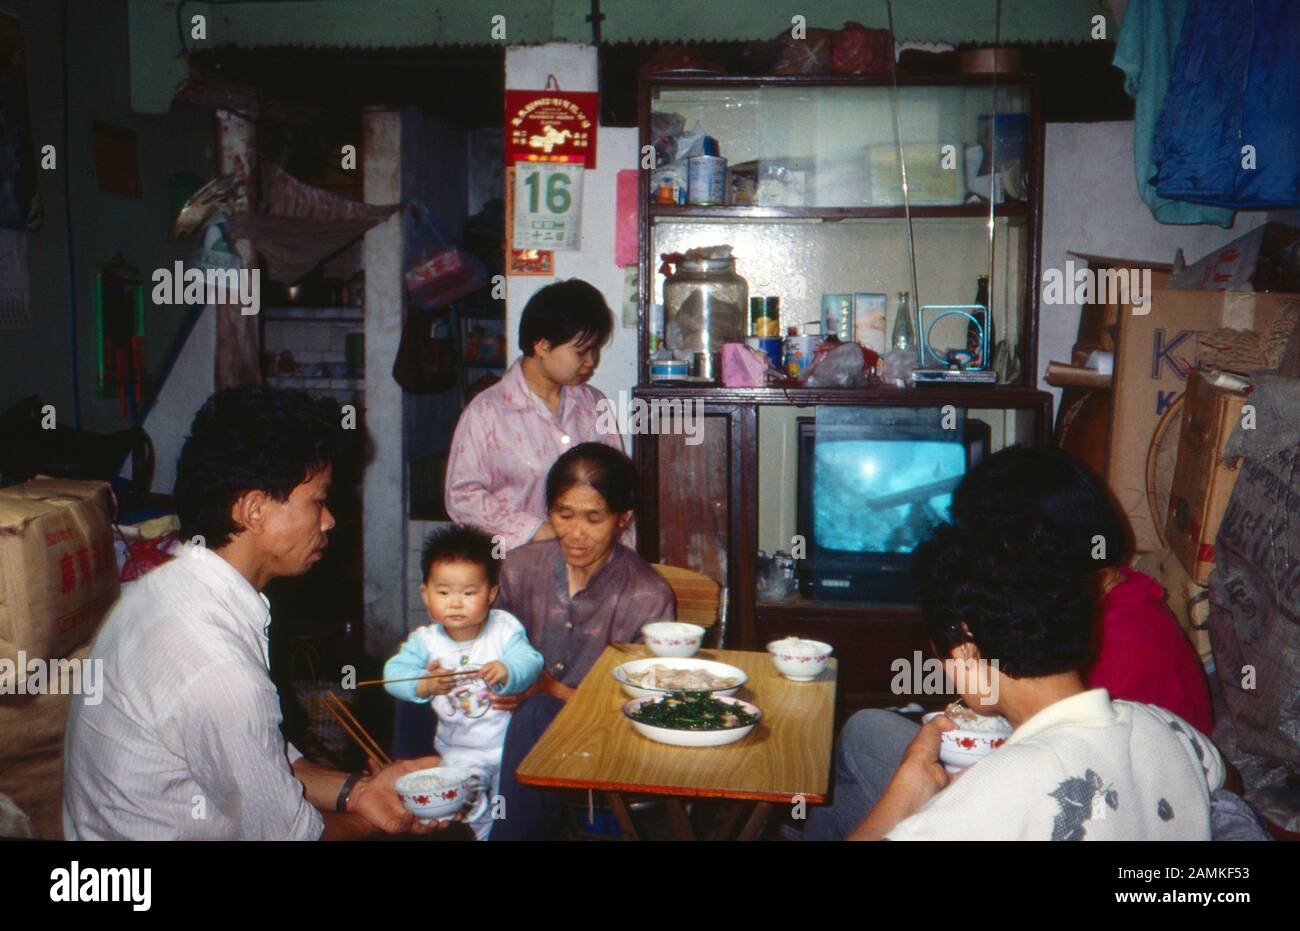 Familie in einer landestypischen Einraum-Wohnung in China, 1980er Jahre. Family in a typical one room flat at China, 1980s. Stock Photo